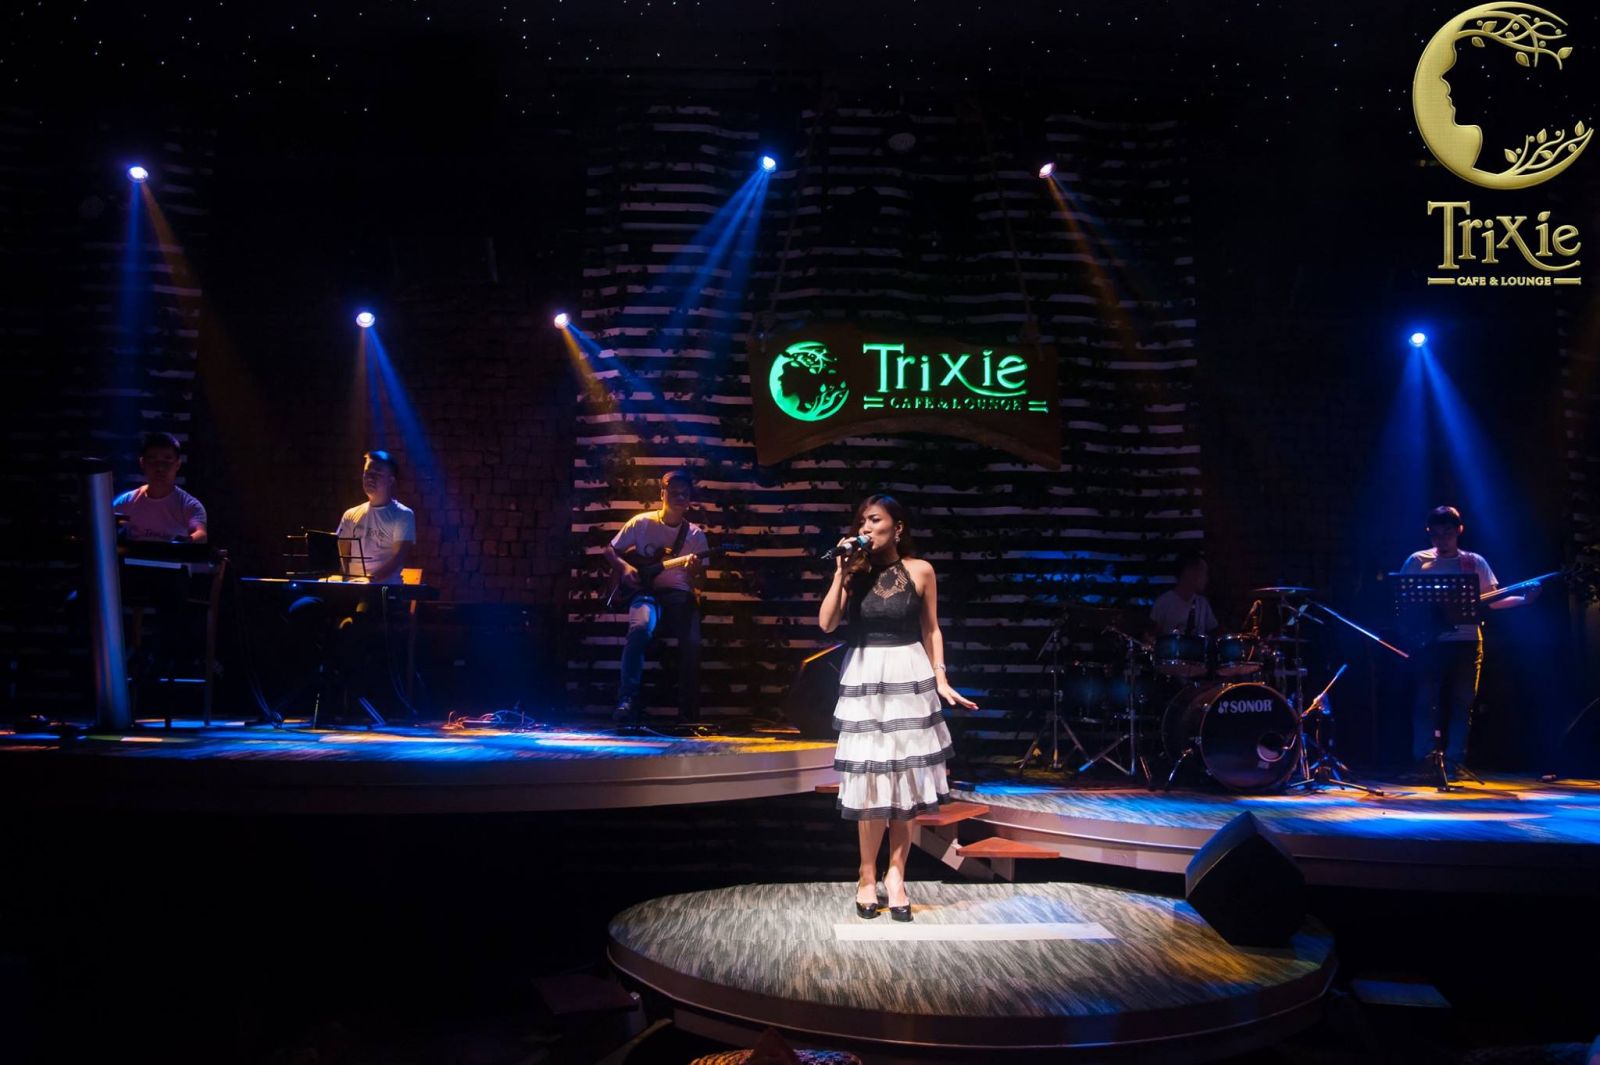 Đêm nhạc trữ tình Trixie, cảm xúc sâu lắng theo từng giai điệu.